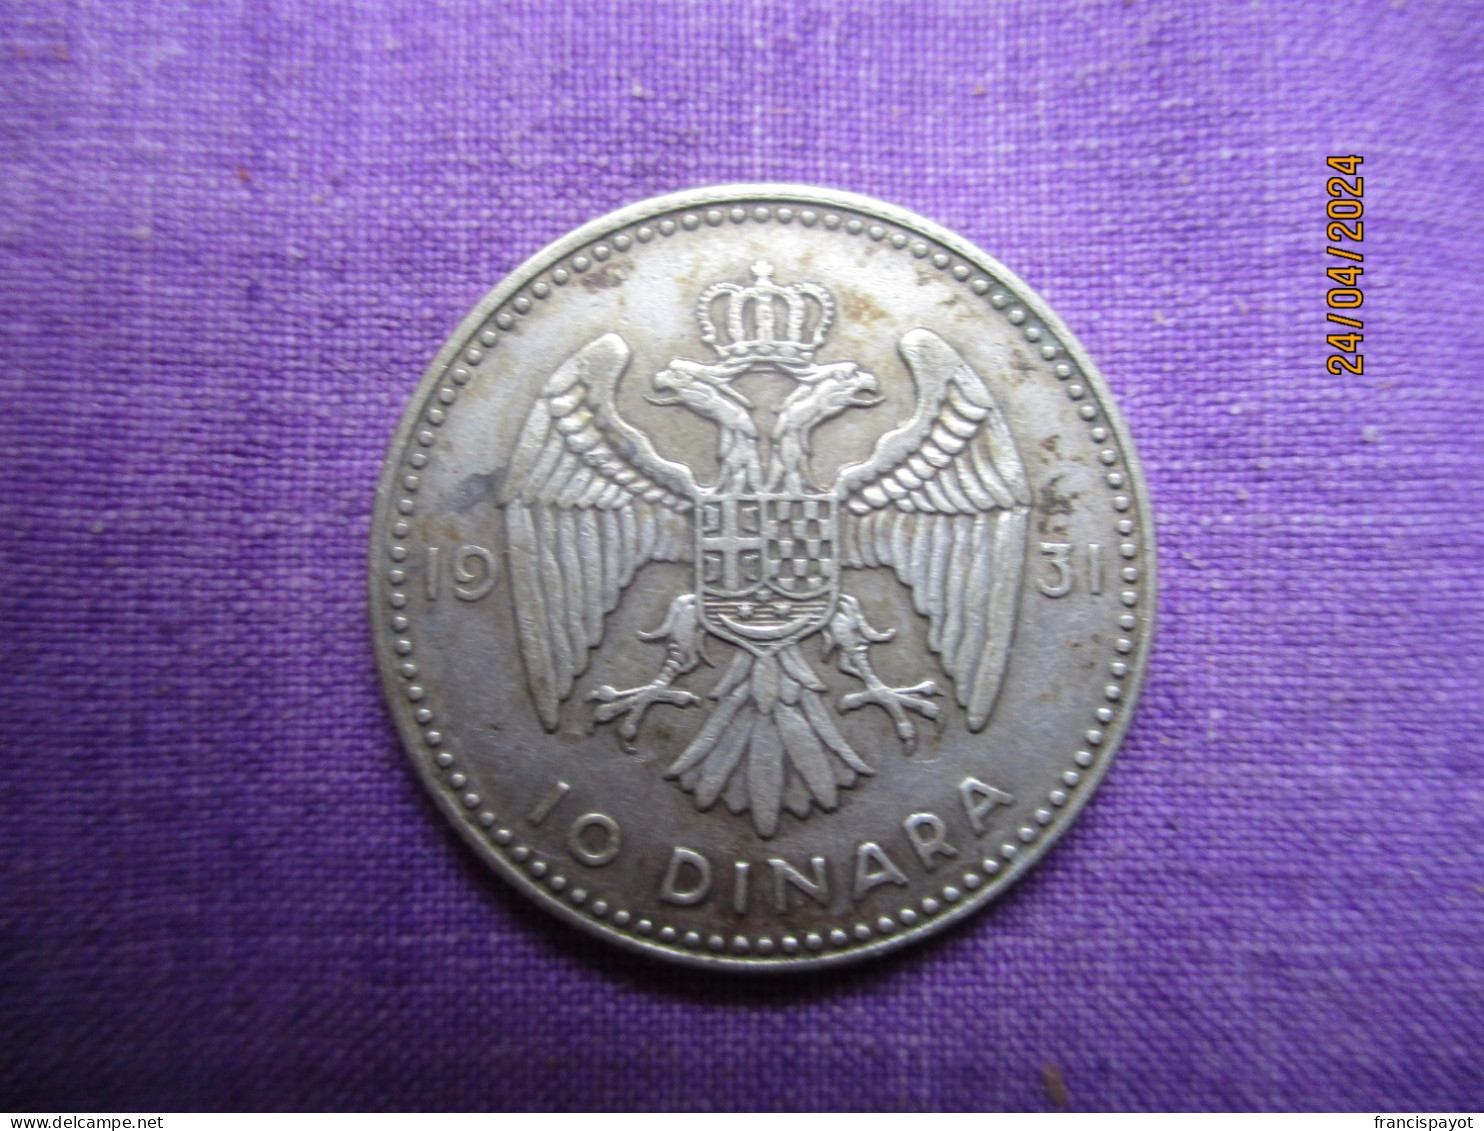 Serbie (Yougoslavie) 10 Dinar 1931 - Serbie